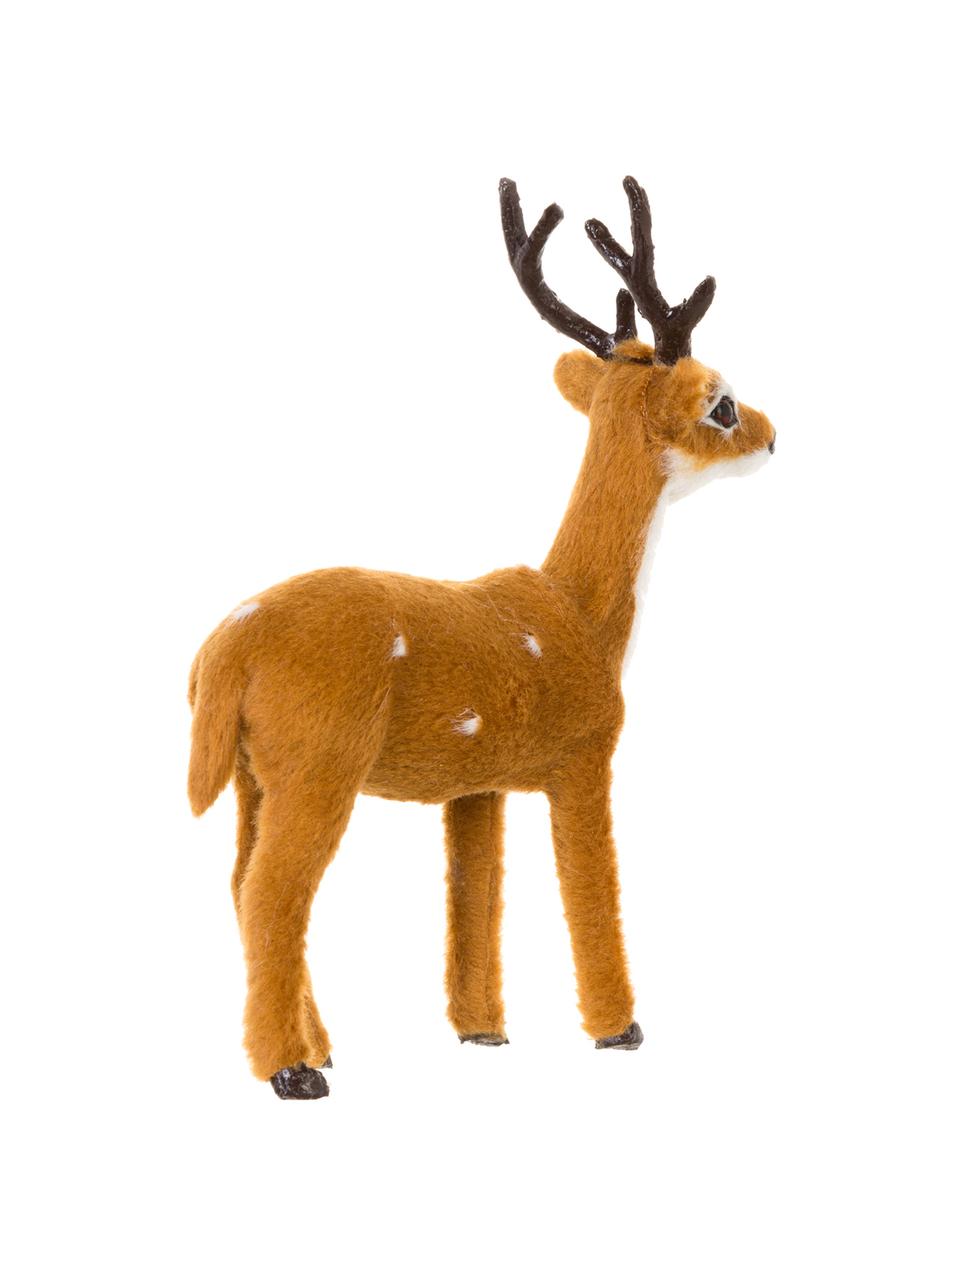 Súprava dekorácií Deer, 3 diely, Polymérová živica, Hnedá, sivá, biela, Š 8 x V 13 cm